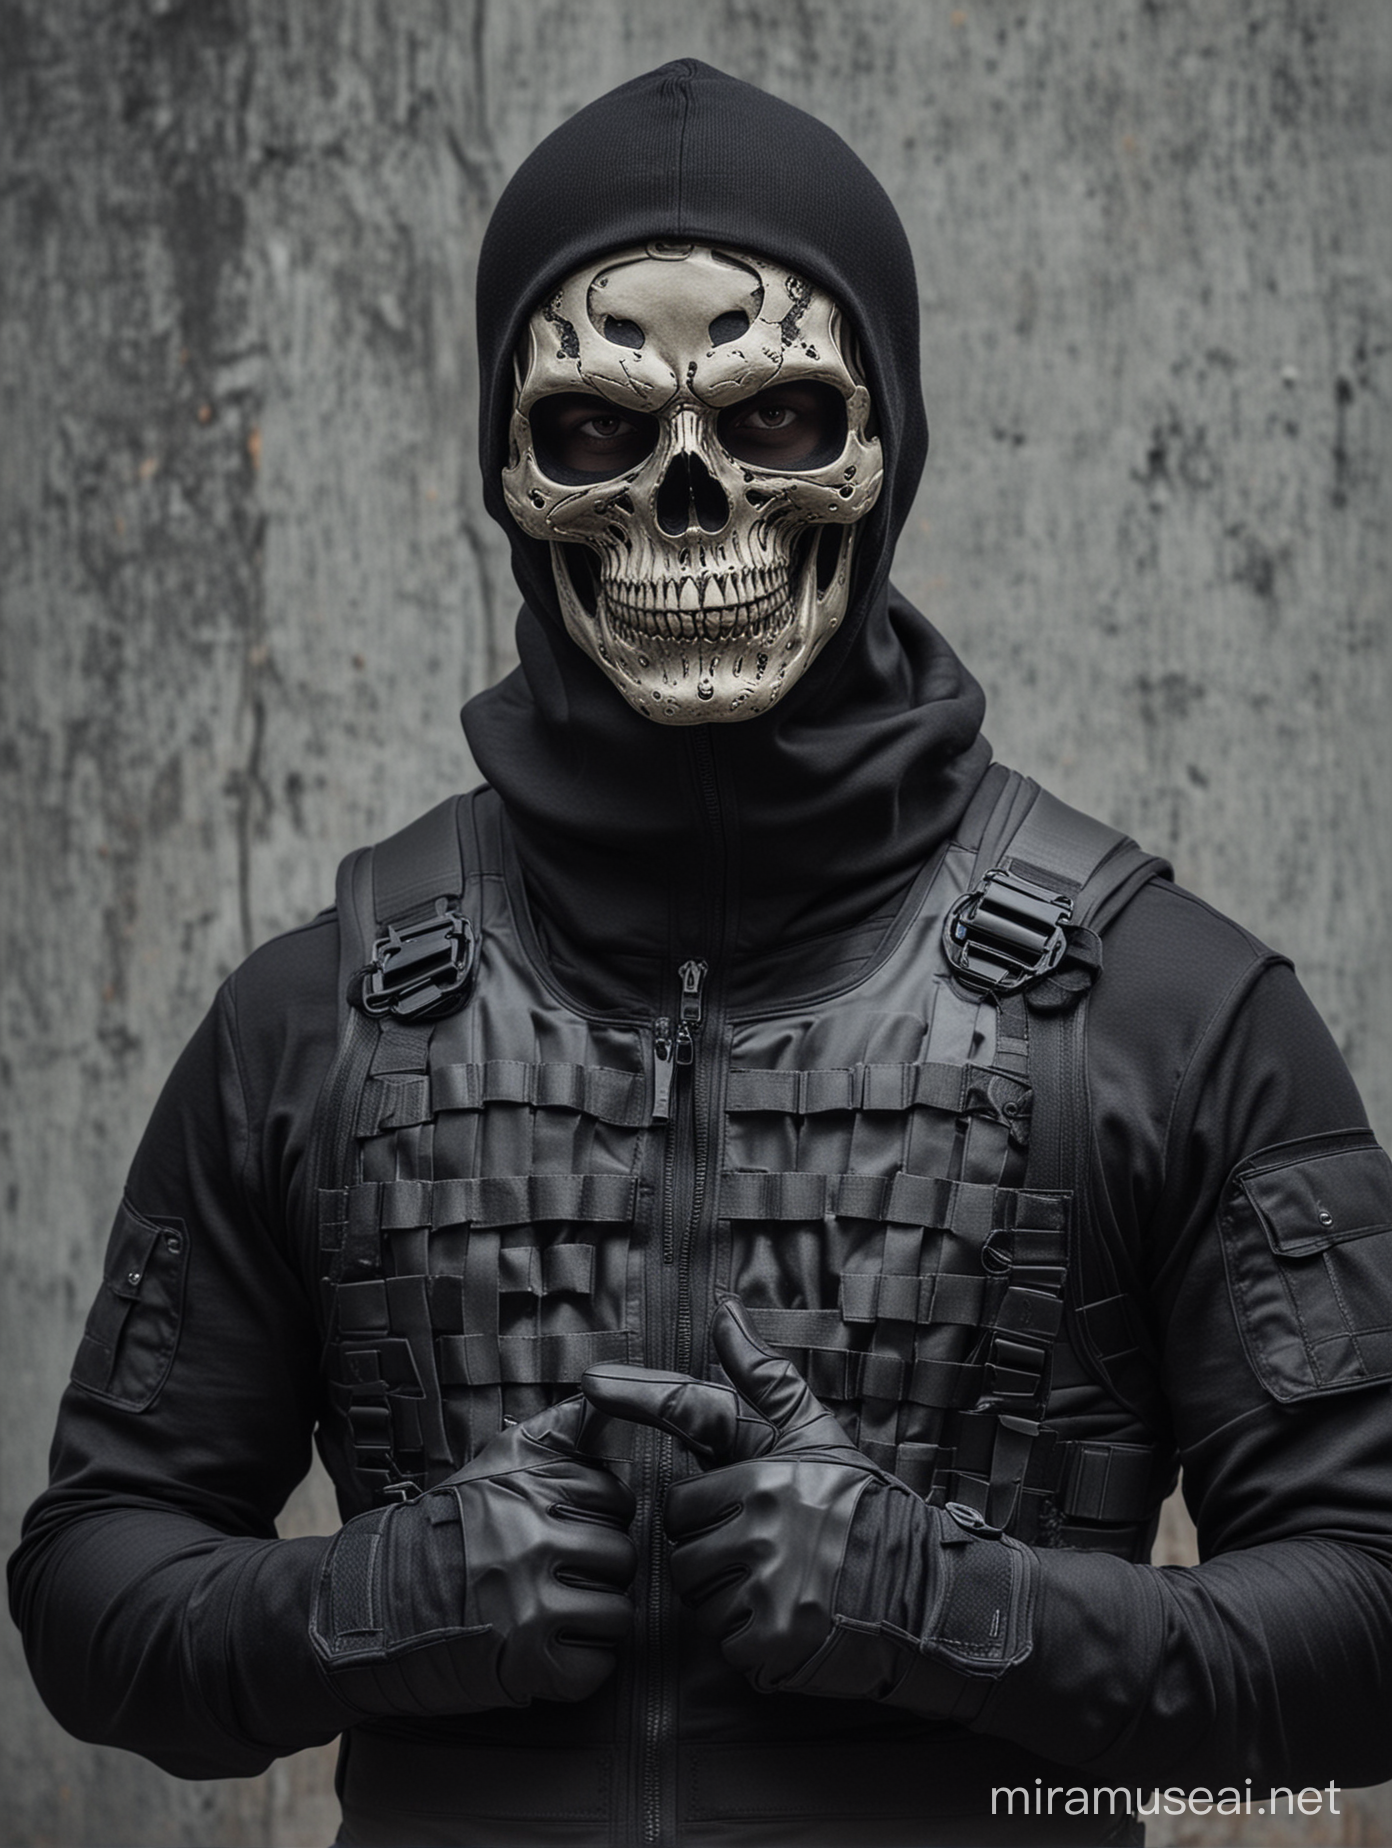 Skull balaclava masked man,black zip-up pullover, black bulletproof plate carrier vest, black gloves 